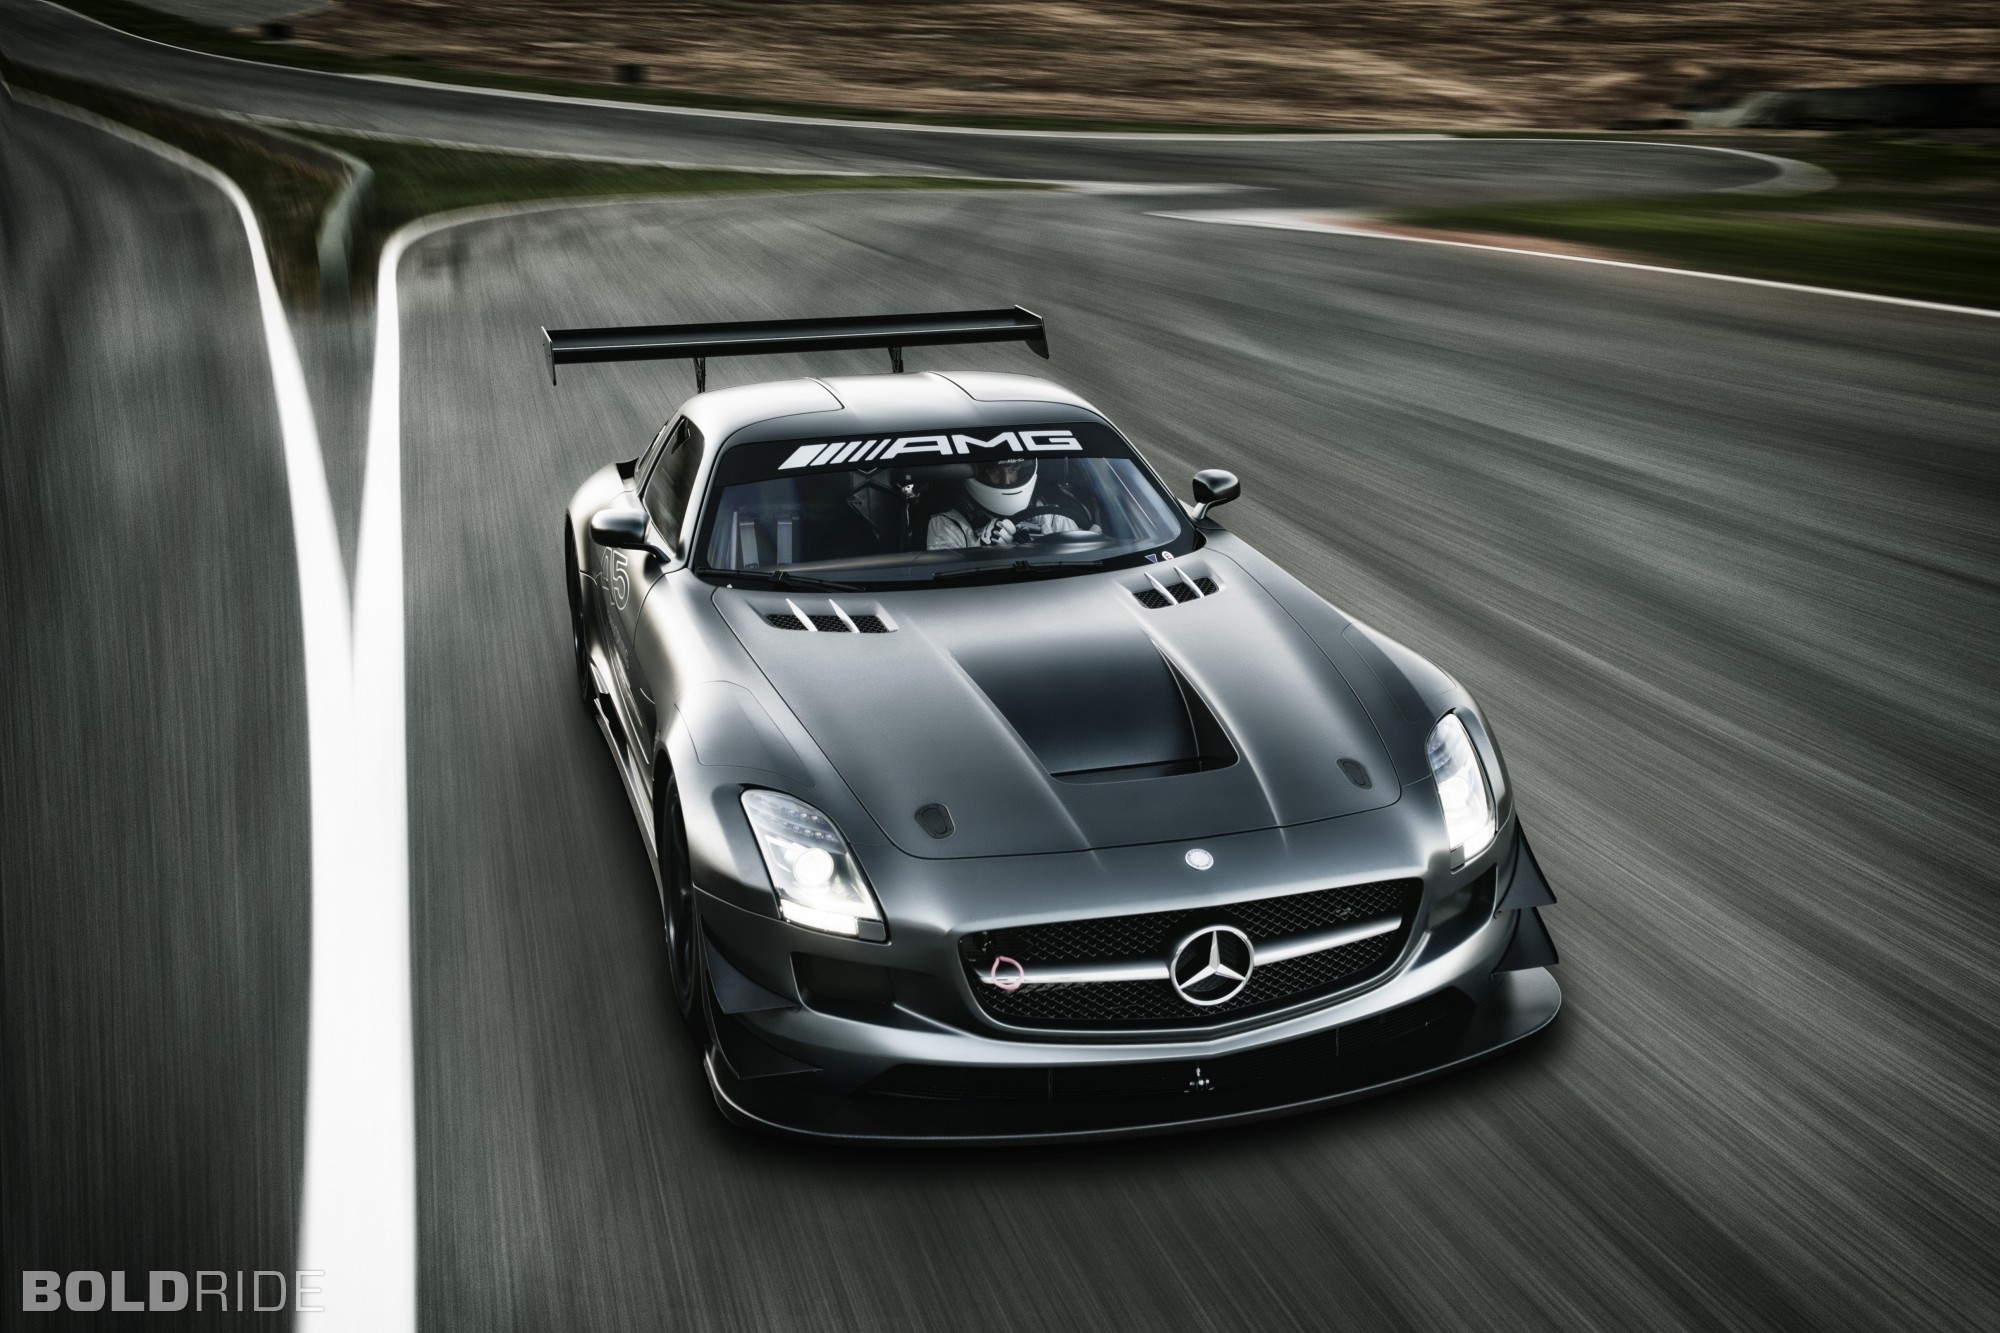 2013, Mercedes, Benz, Sls, Amg, Gt3, Race, Racing, Supercar, Mh Wallpaper